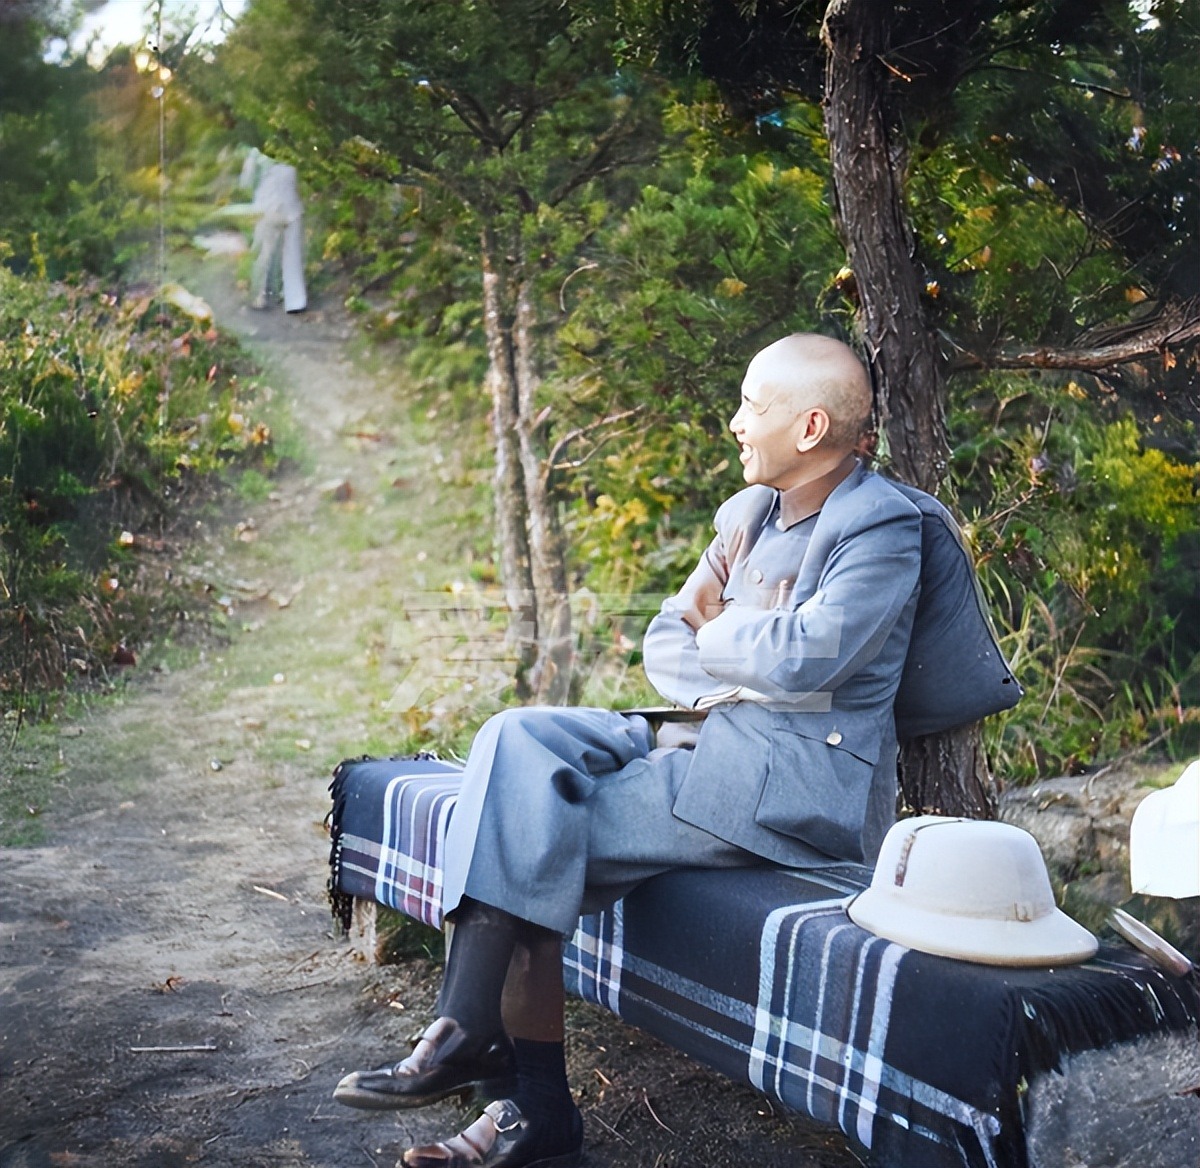 蒋介石在庐山的珍贵老照片 与马歇尔含鄱口看日出 大天池野餐